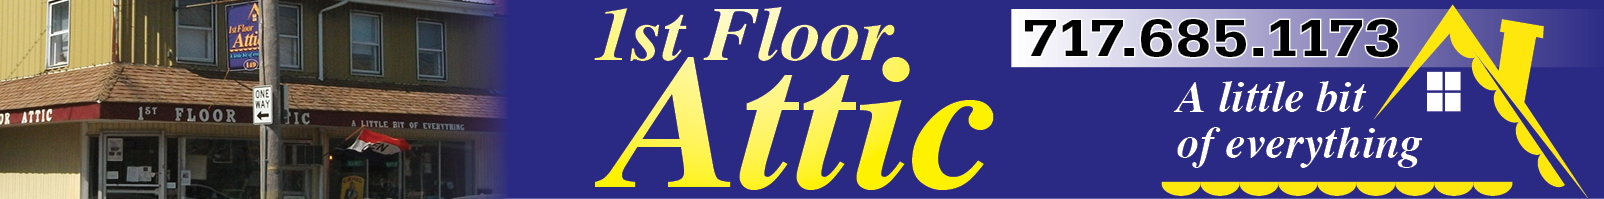 1st Floor Attic